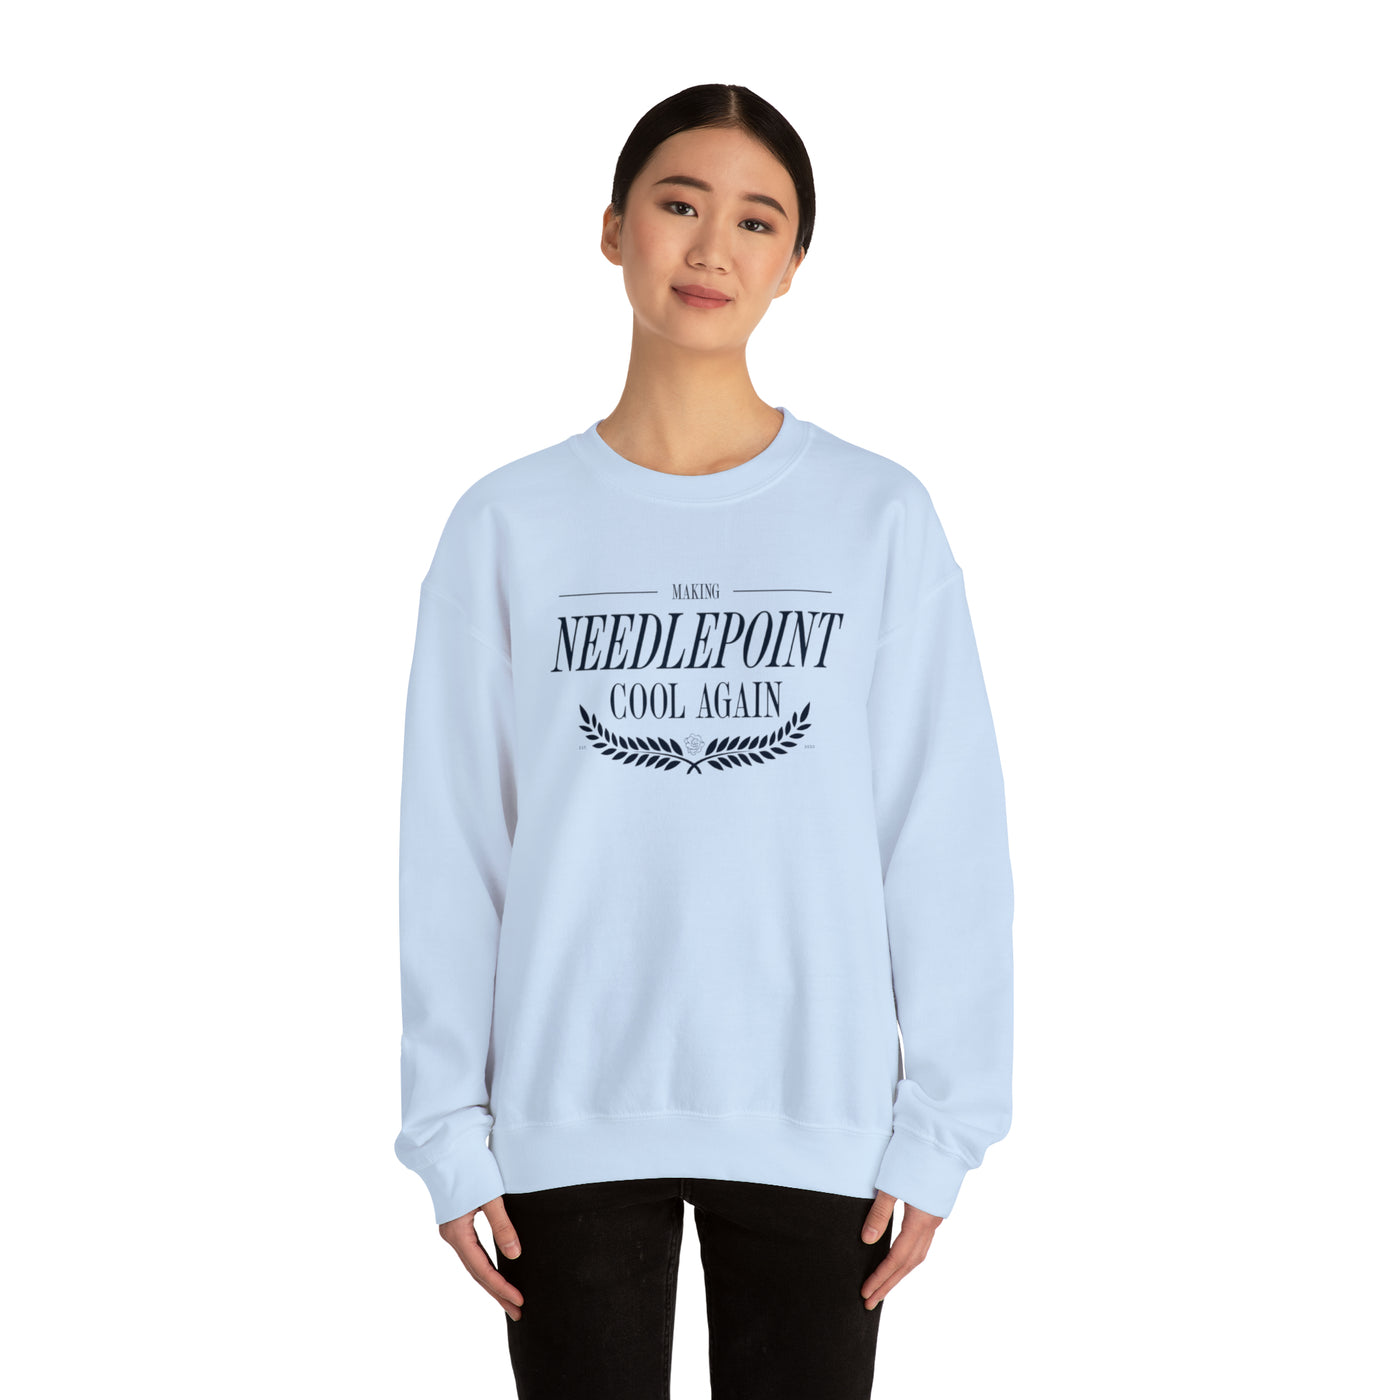 Making Needlepoint Cool Crewneck Sweatshirt